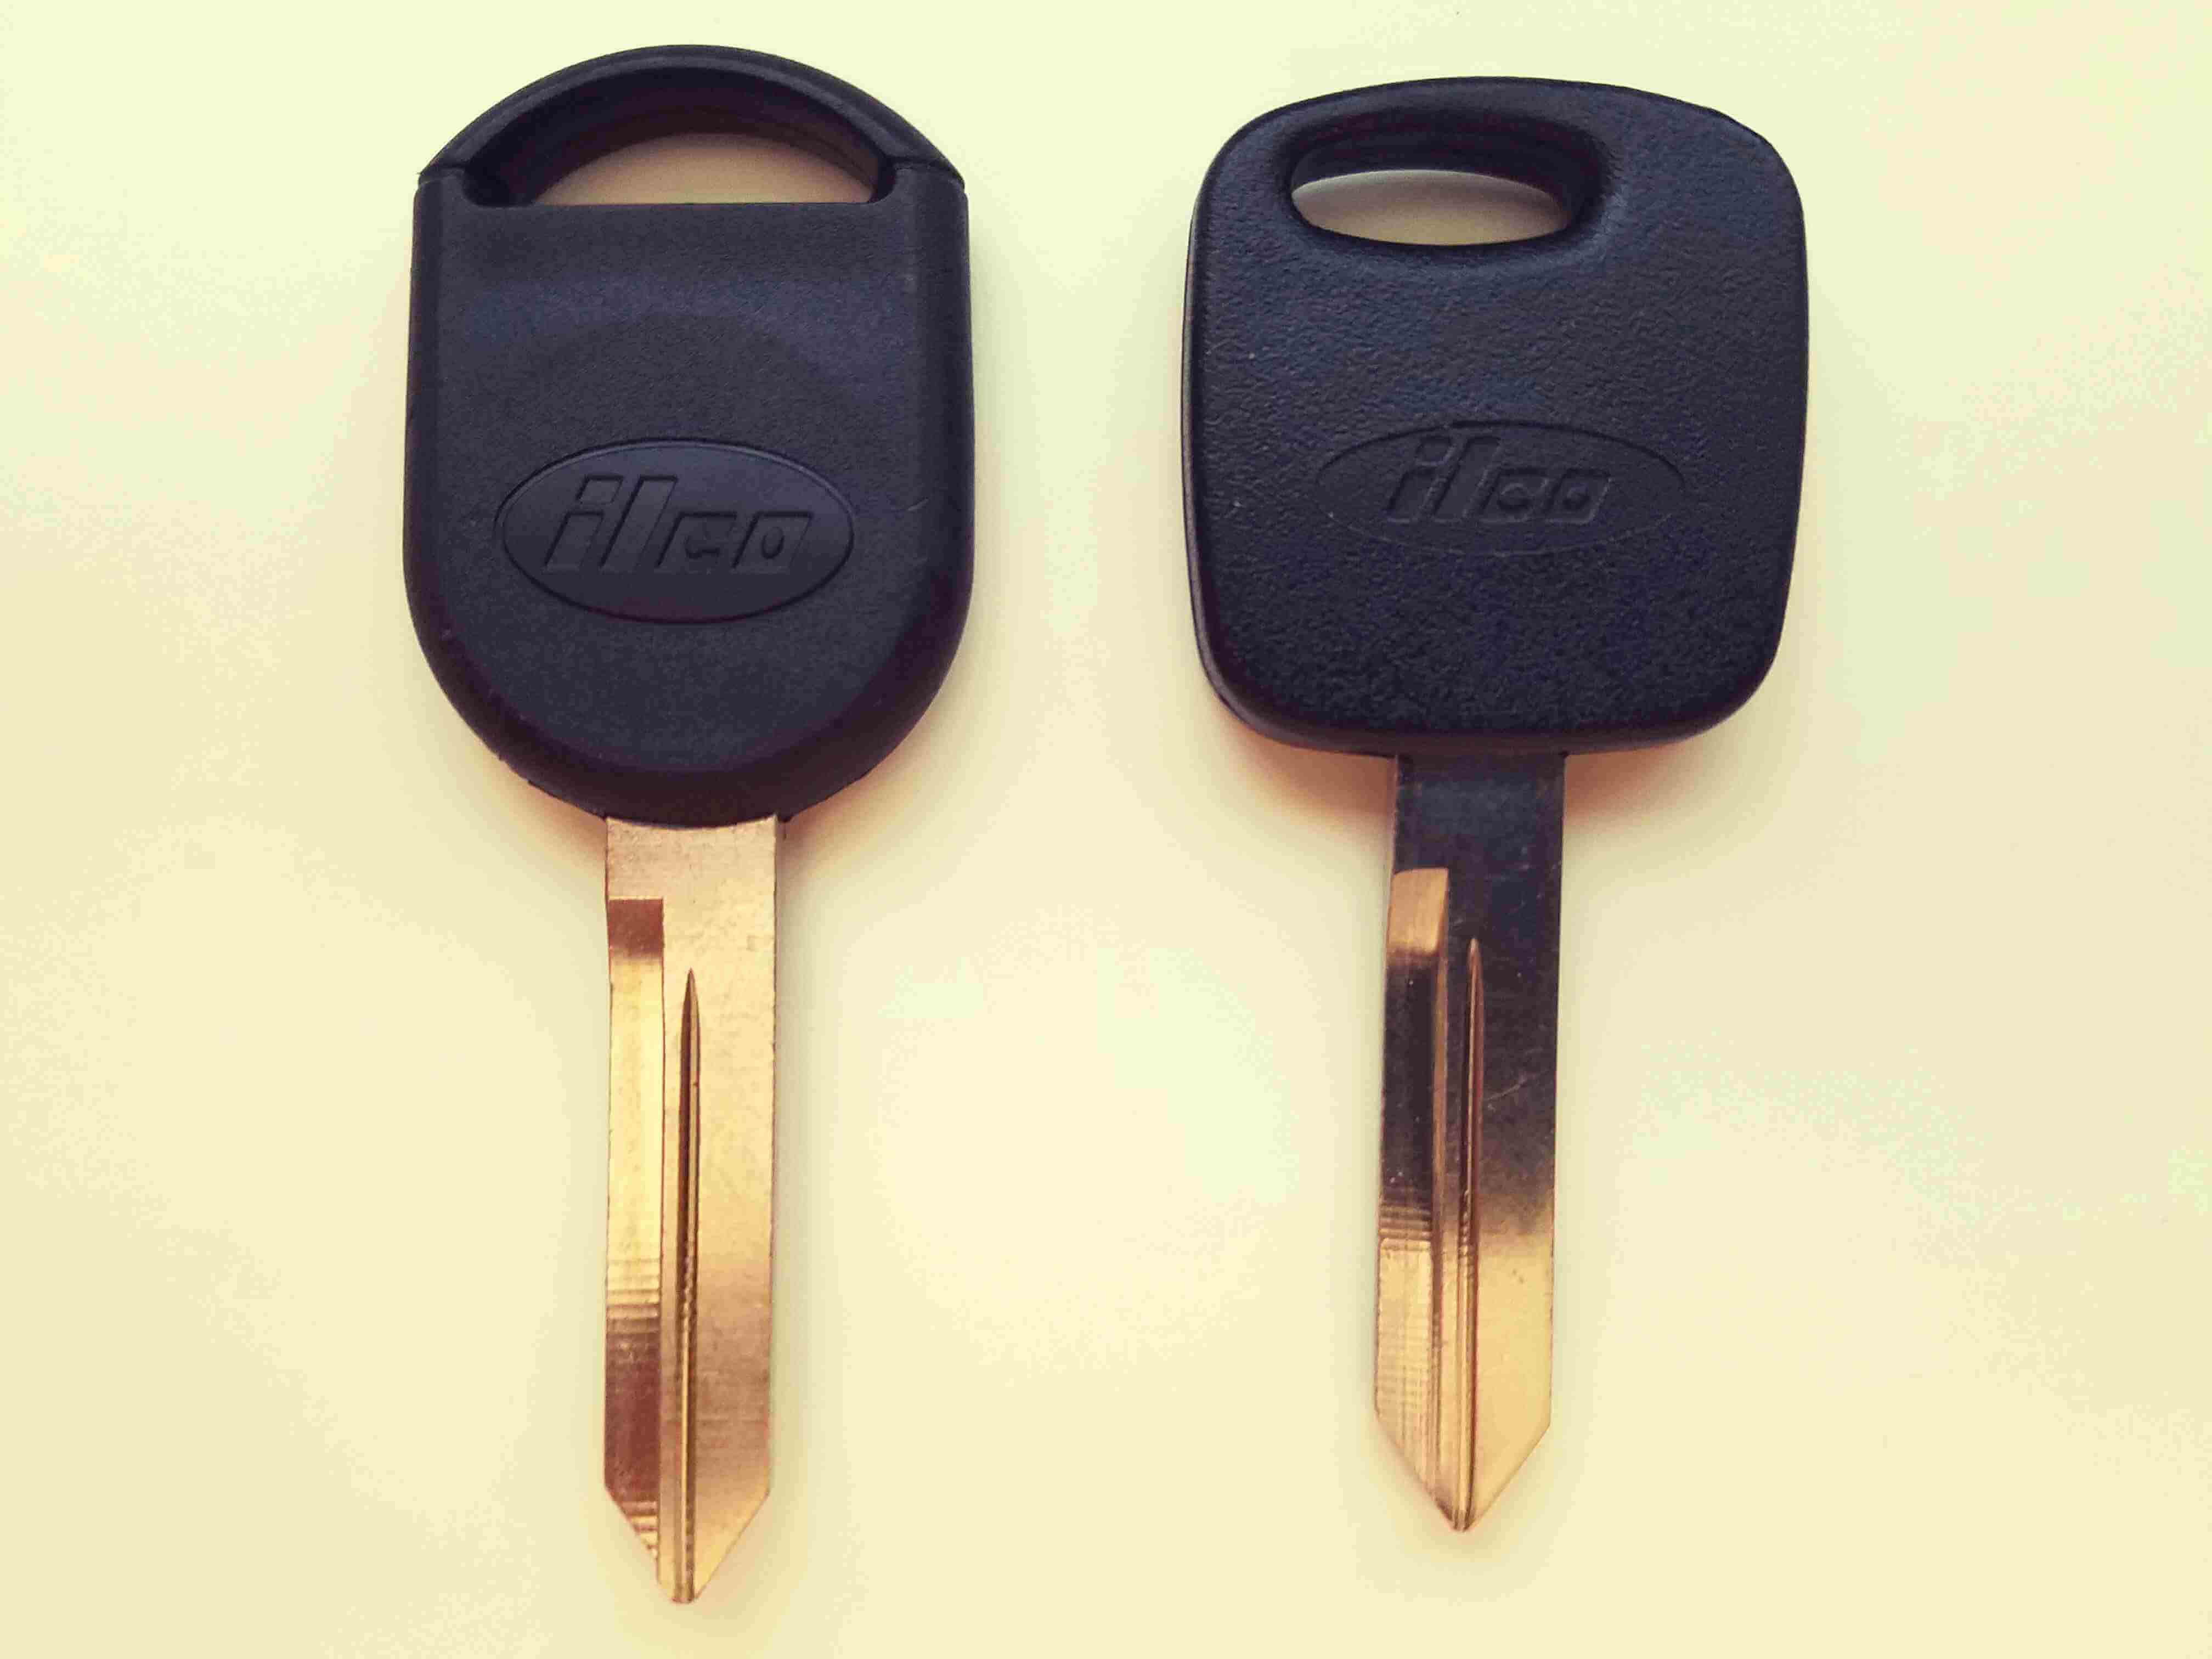 Ford key